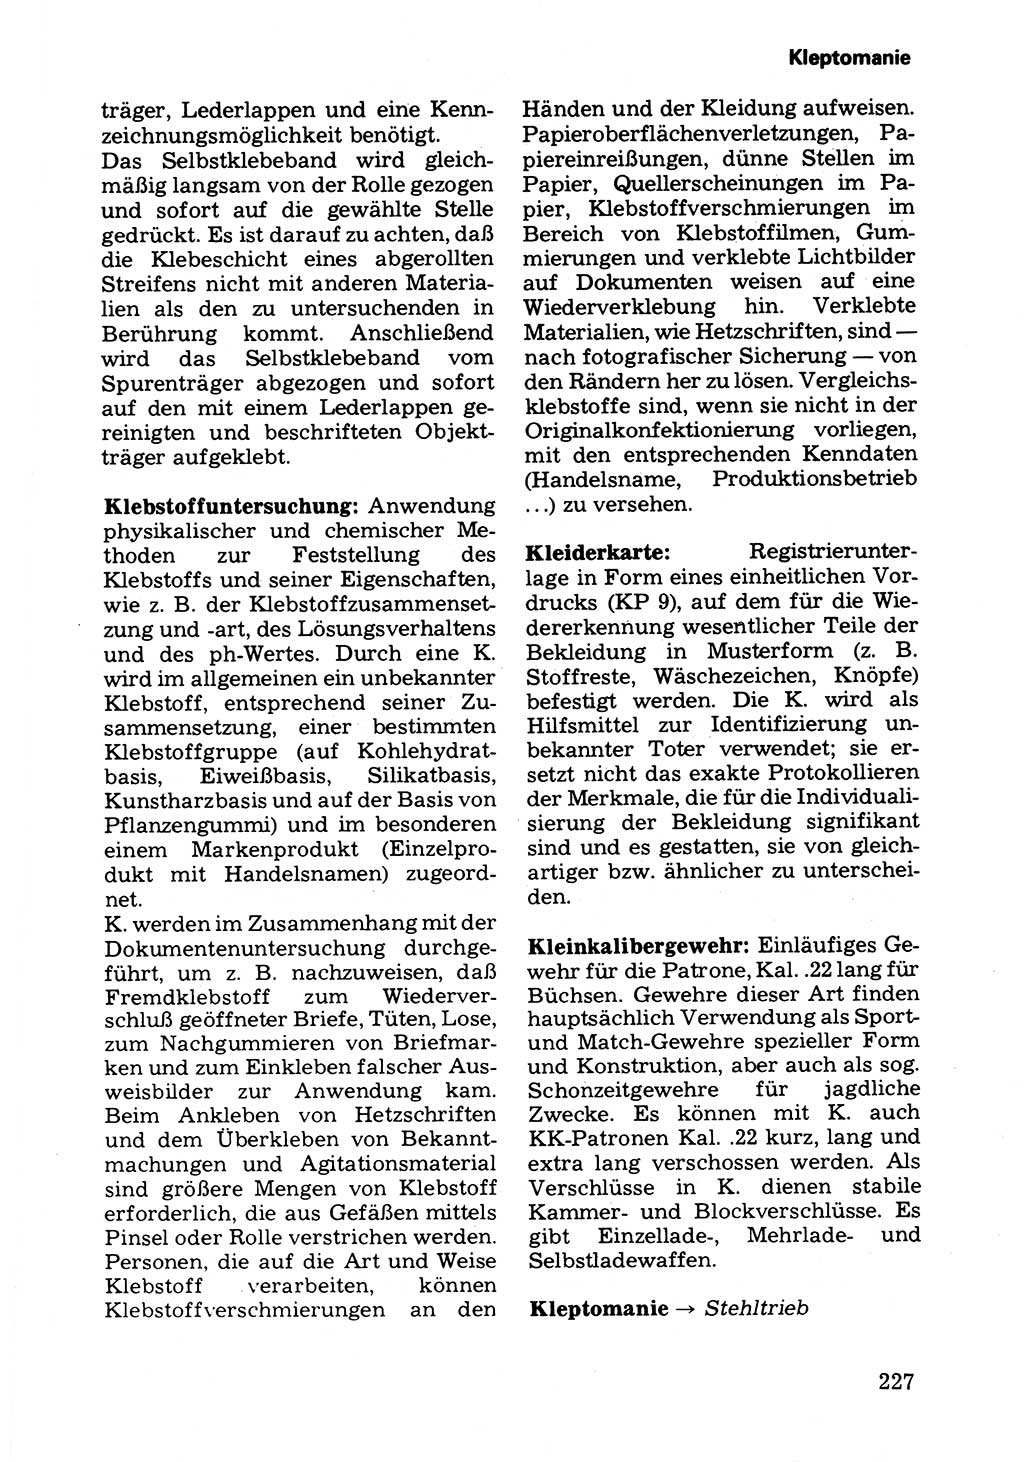 Wörterbuch der sozialistischen Kriminalistik [Deutsche Demokratische Republik (DDR)] 1981, Seite 227 (Wb. soz. Krim. DDR 1981, S. 227)